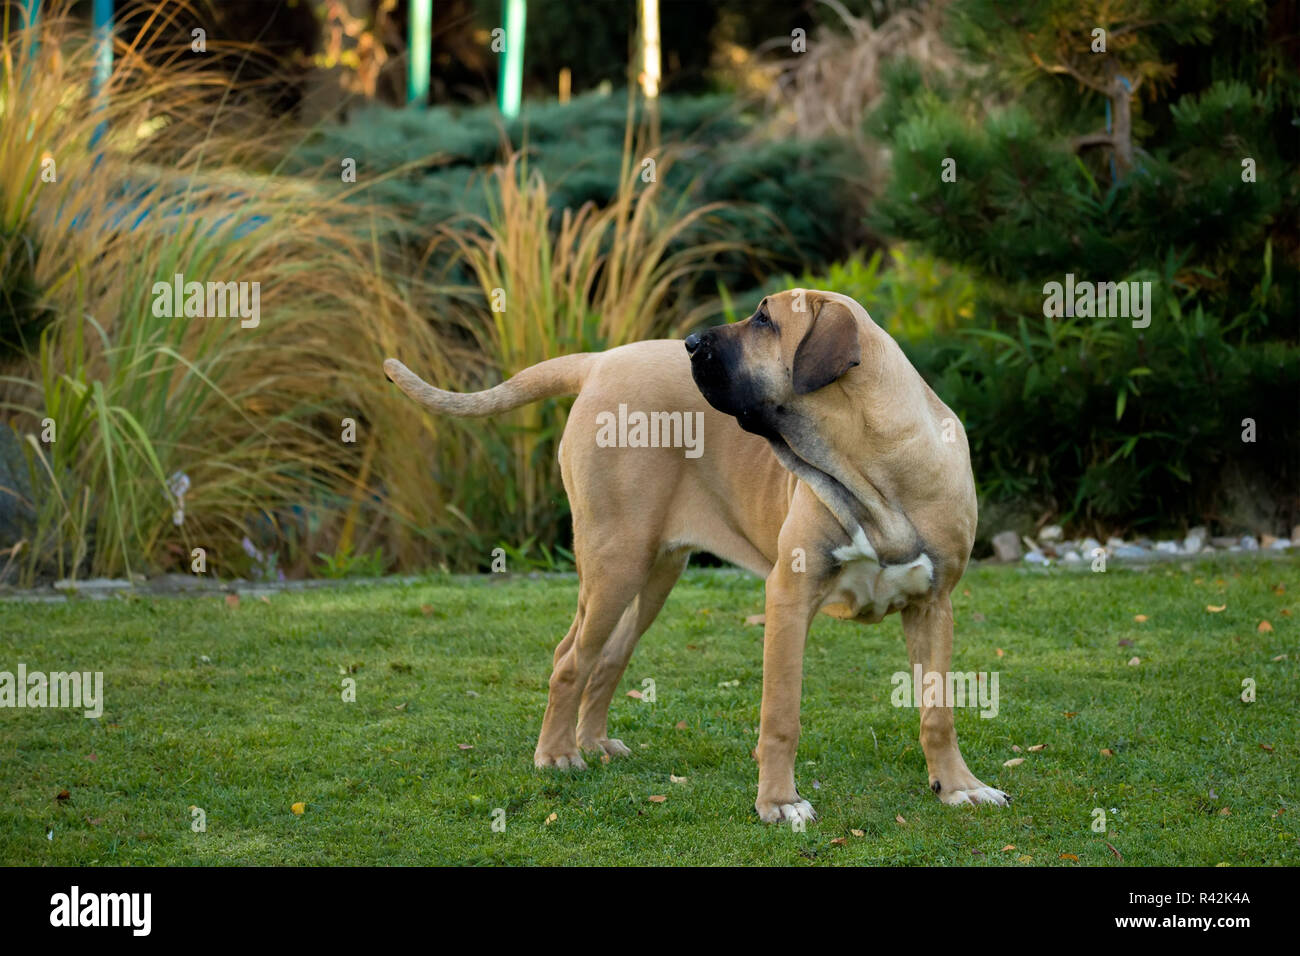 Fila brasileiro dog hi-res stock photography and images - Alamy